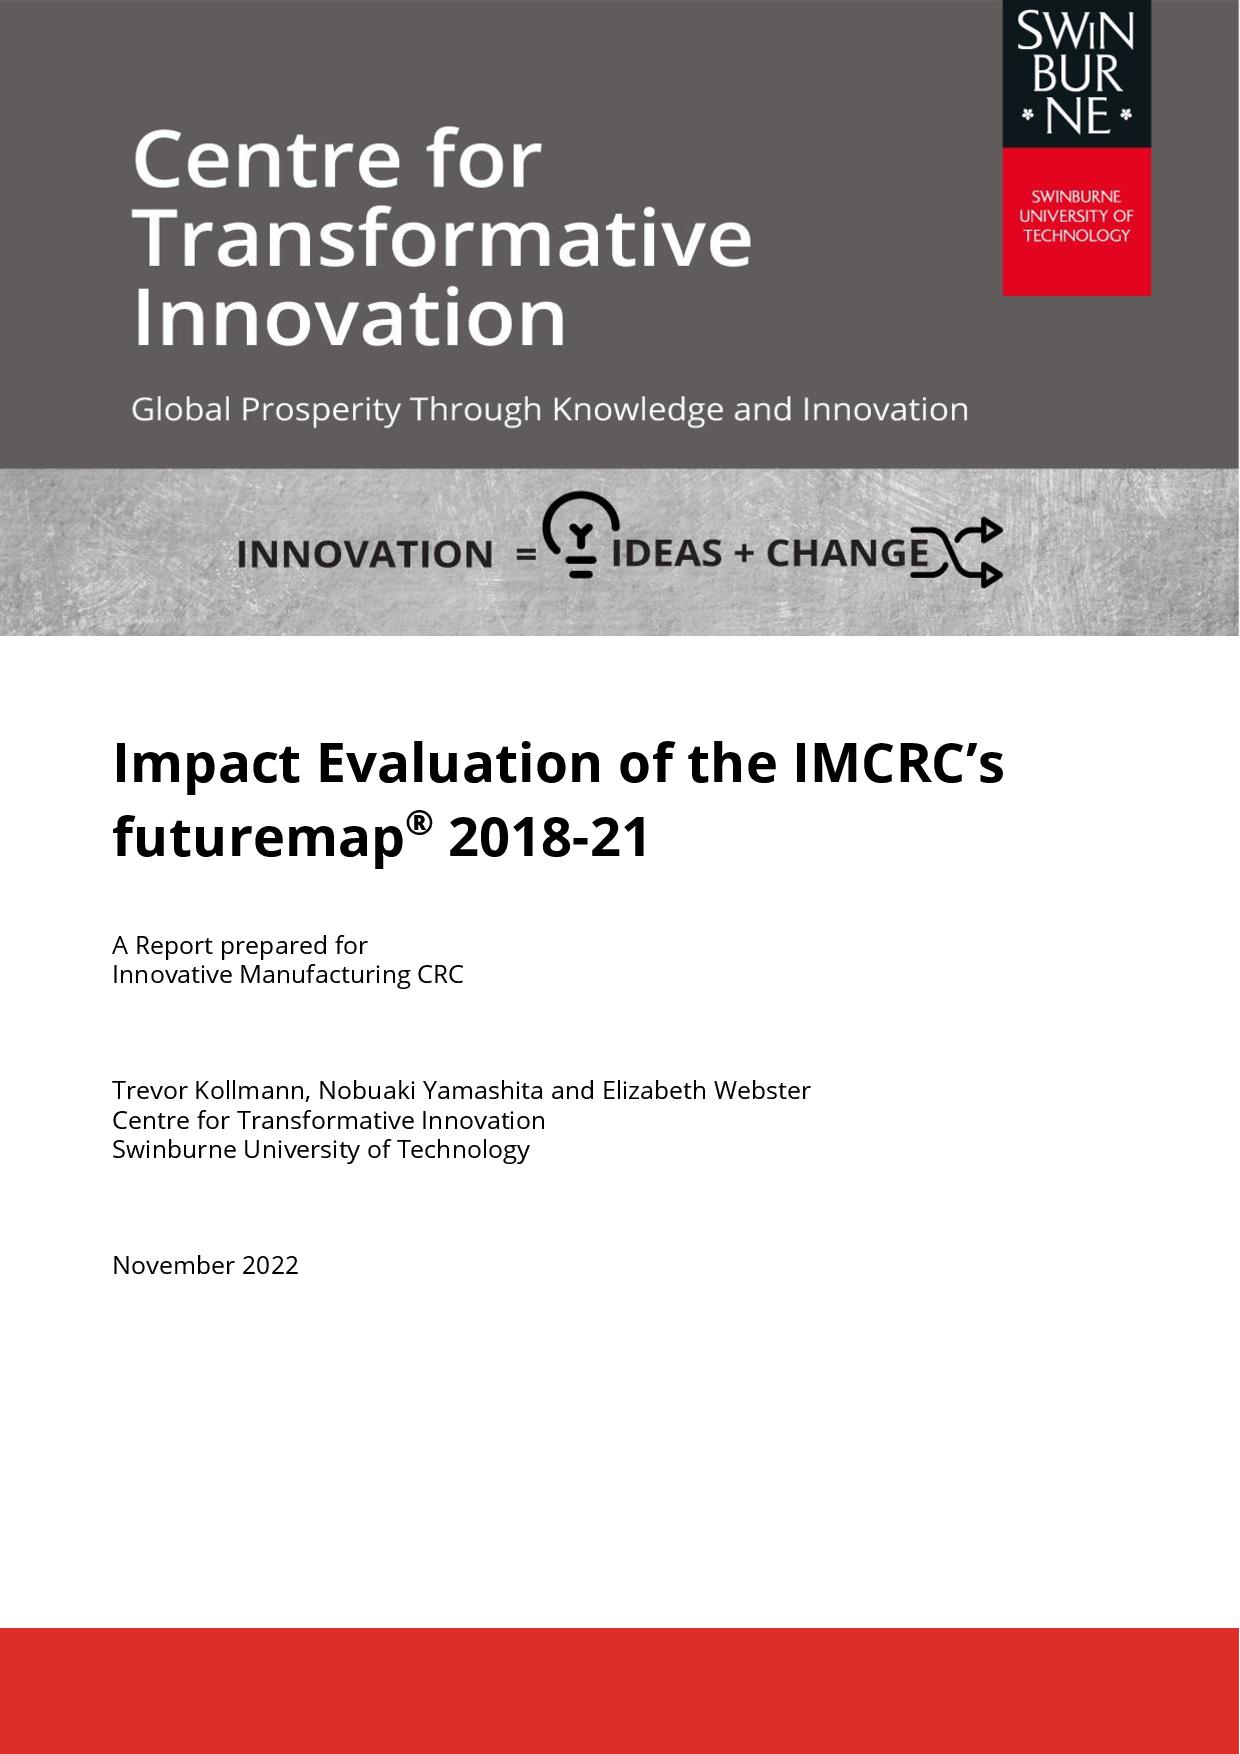 Impact Evaluation of the IMCRC's futuremap® 2018–2021